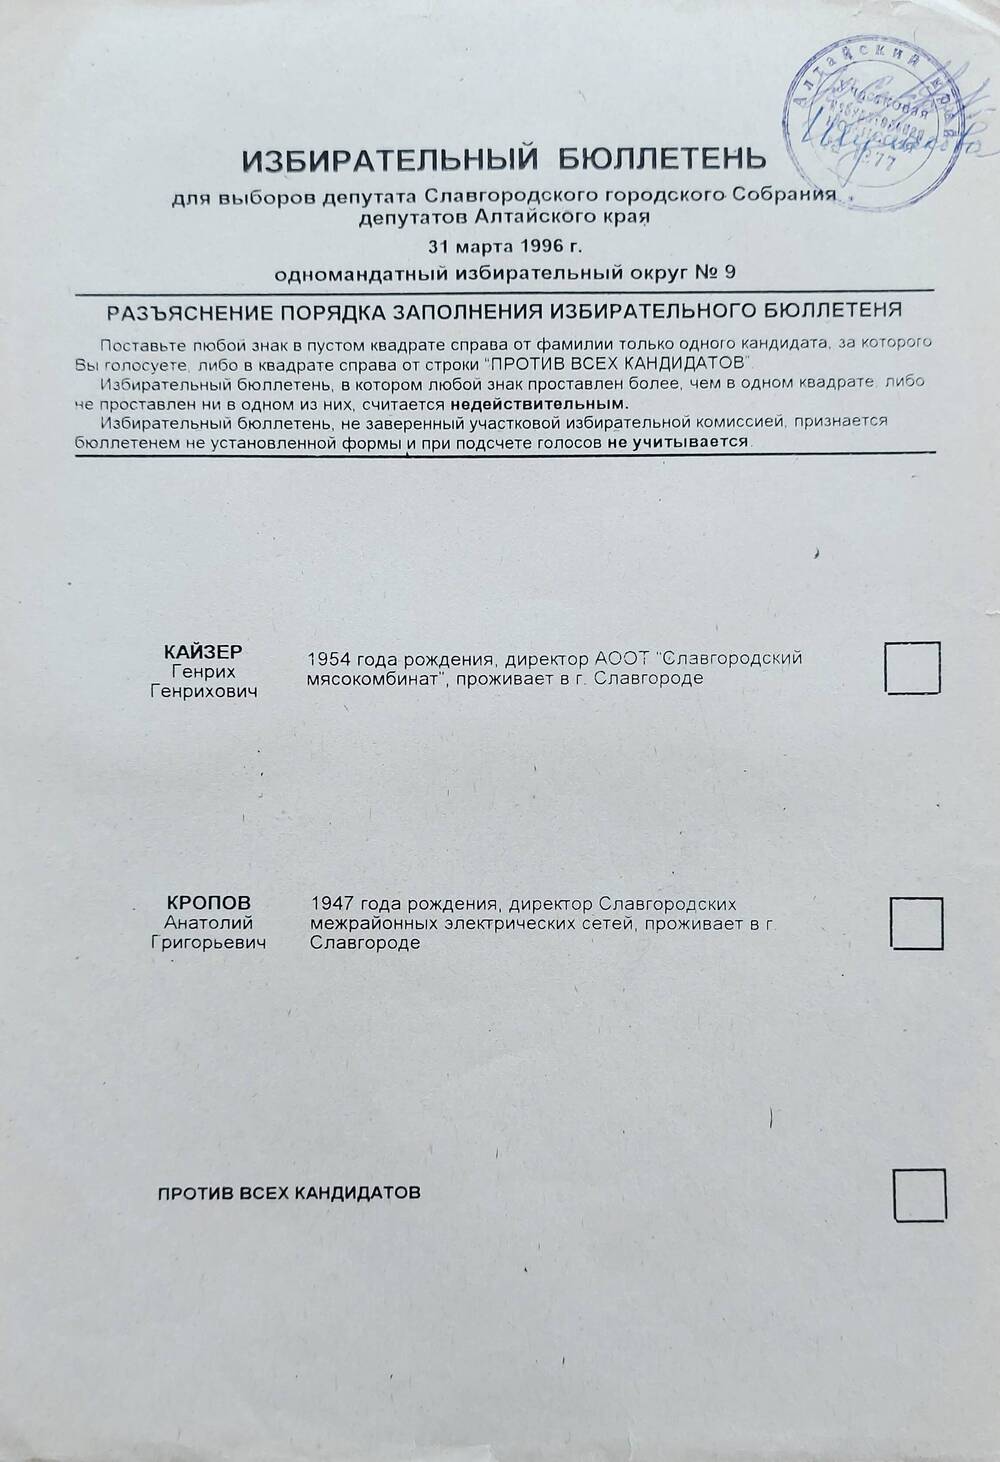 Бюллетень избирательный для выборов депутата Славгородского городского Собрания депутатов Алтайского края 31 марта 1996 года одномандатного избирательного округа № 9.